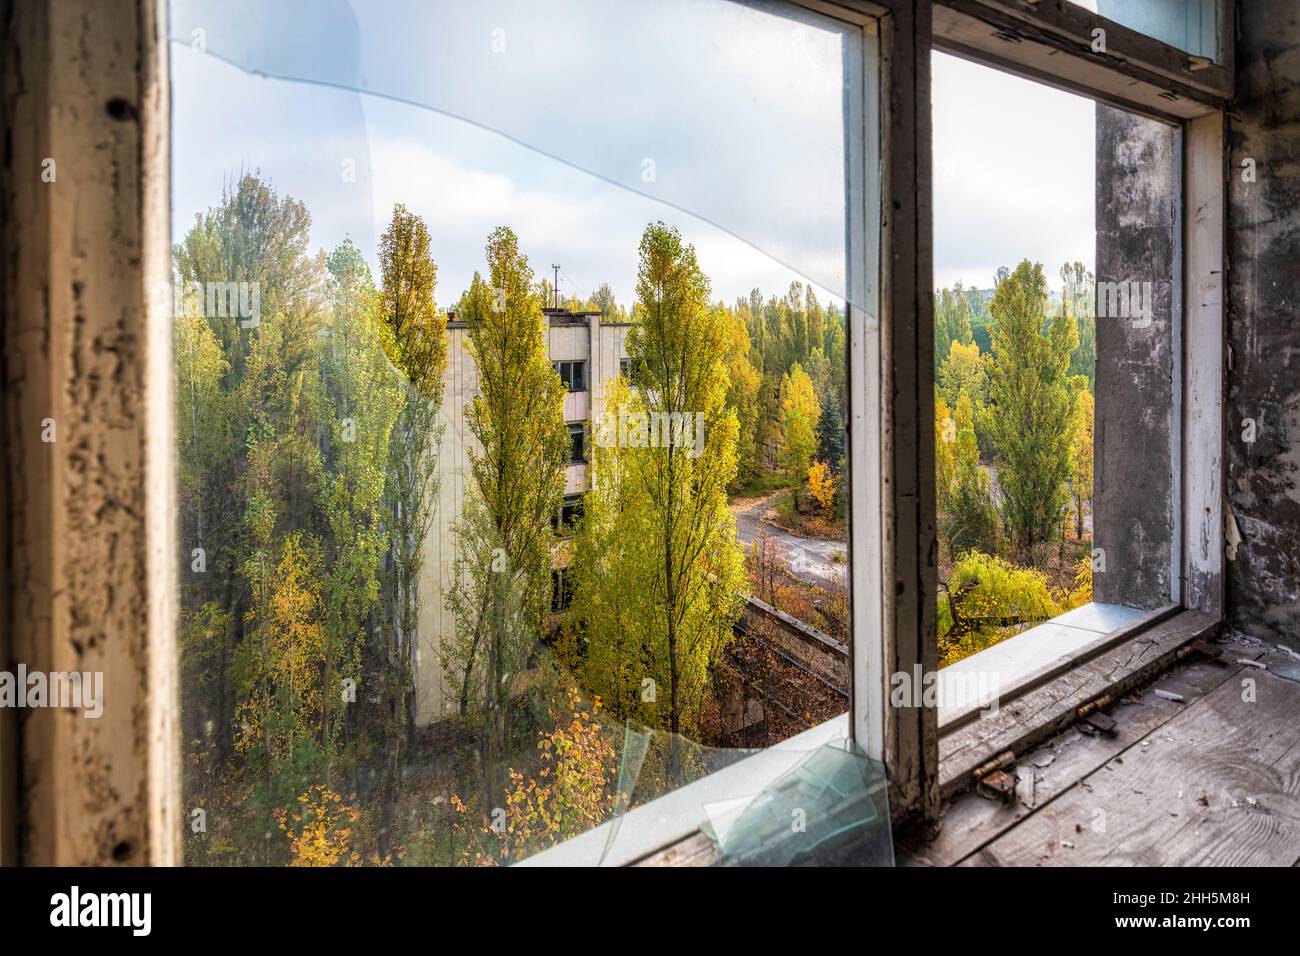 Ucraina, Kiev Oblast, Pripyat, città abbandonata vista attraverso una finestra rotta Foto Stock